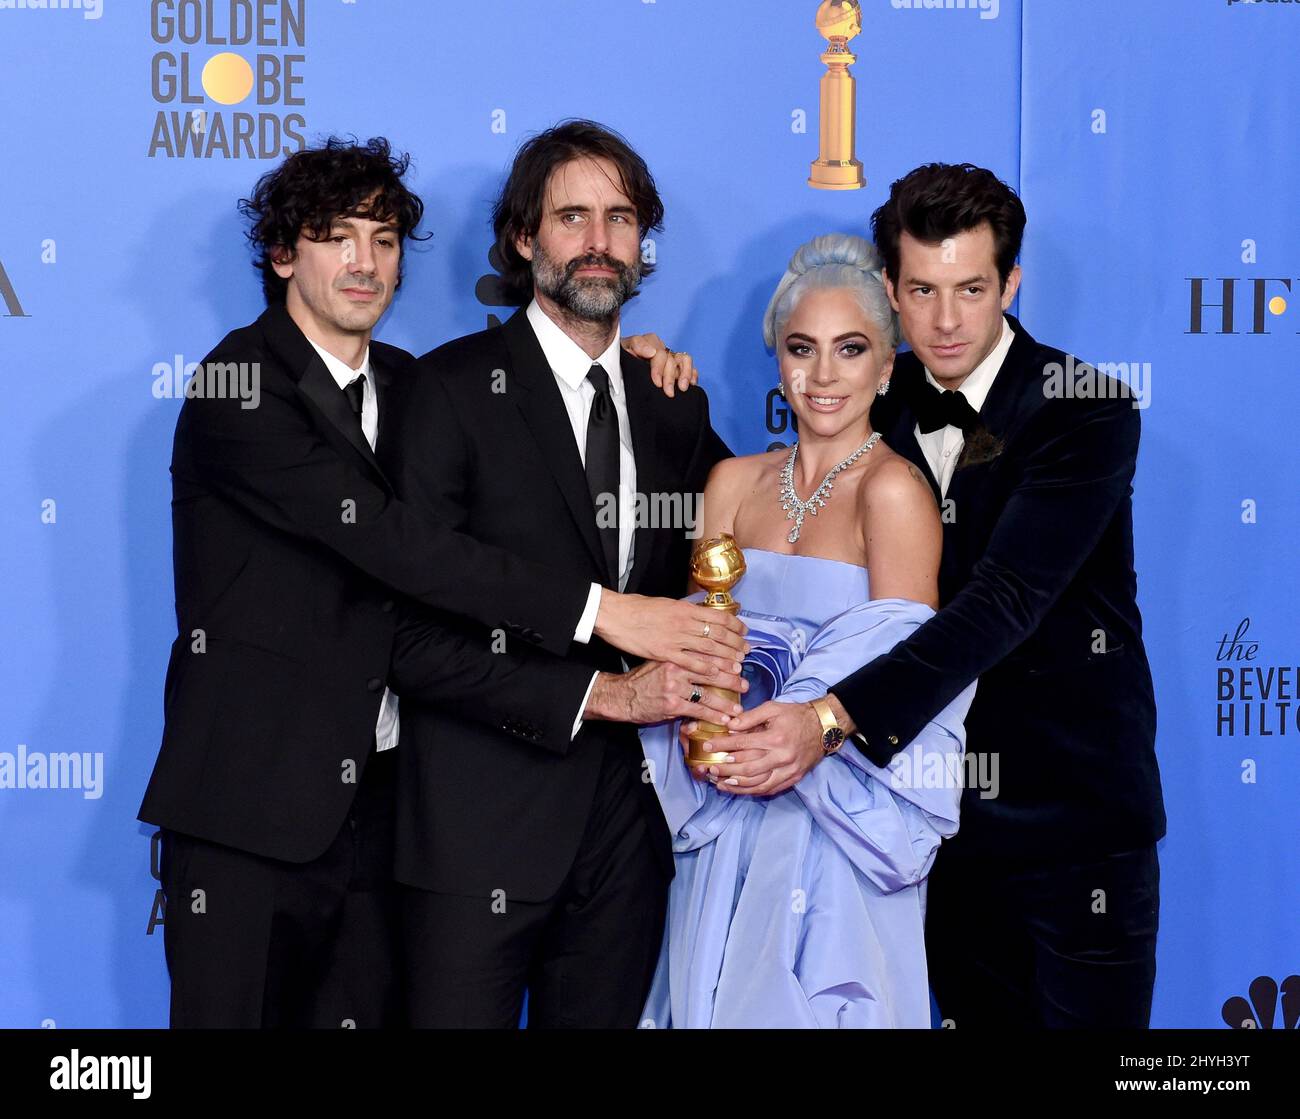 Anthony Rossomando, Andrew Wyatt, Lady Gaga e Mark Ronson in occasione dei Golden Globe Awards 76th che si tengono presso il Beverly Hilton Hotel il 6 gennaio 2019 a Beverly Hills, CA. Foto Stock